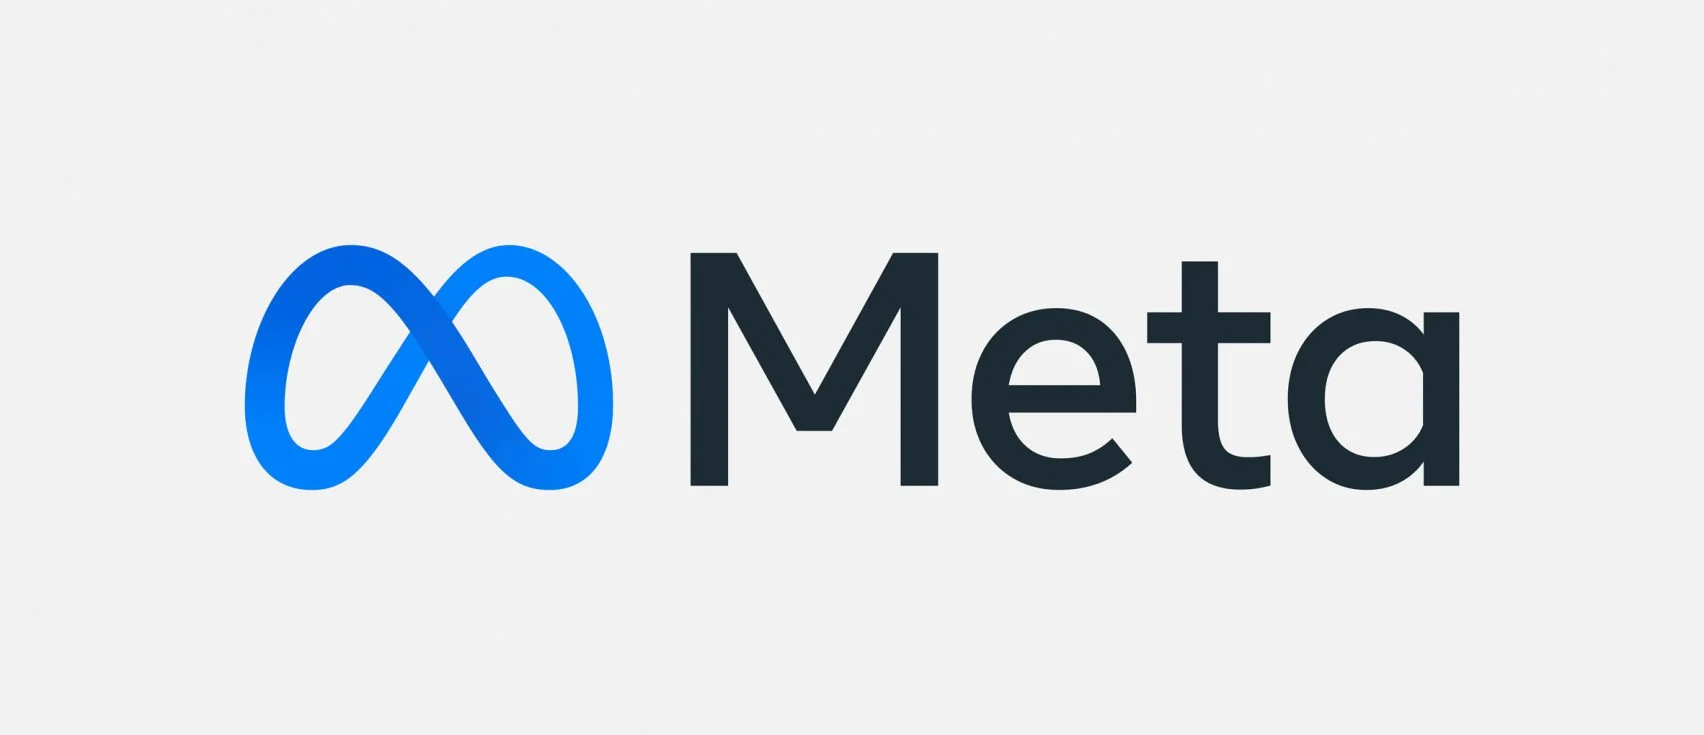 메타로 이름바꾼 페이스북, 무한 루프 형태의 로고 도입